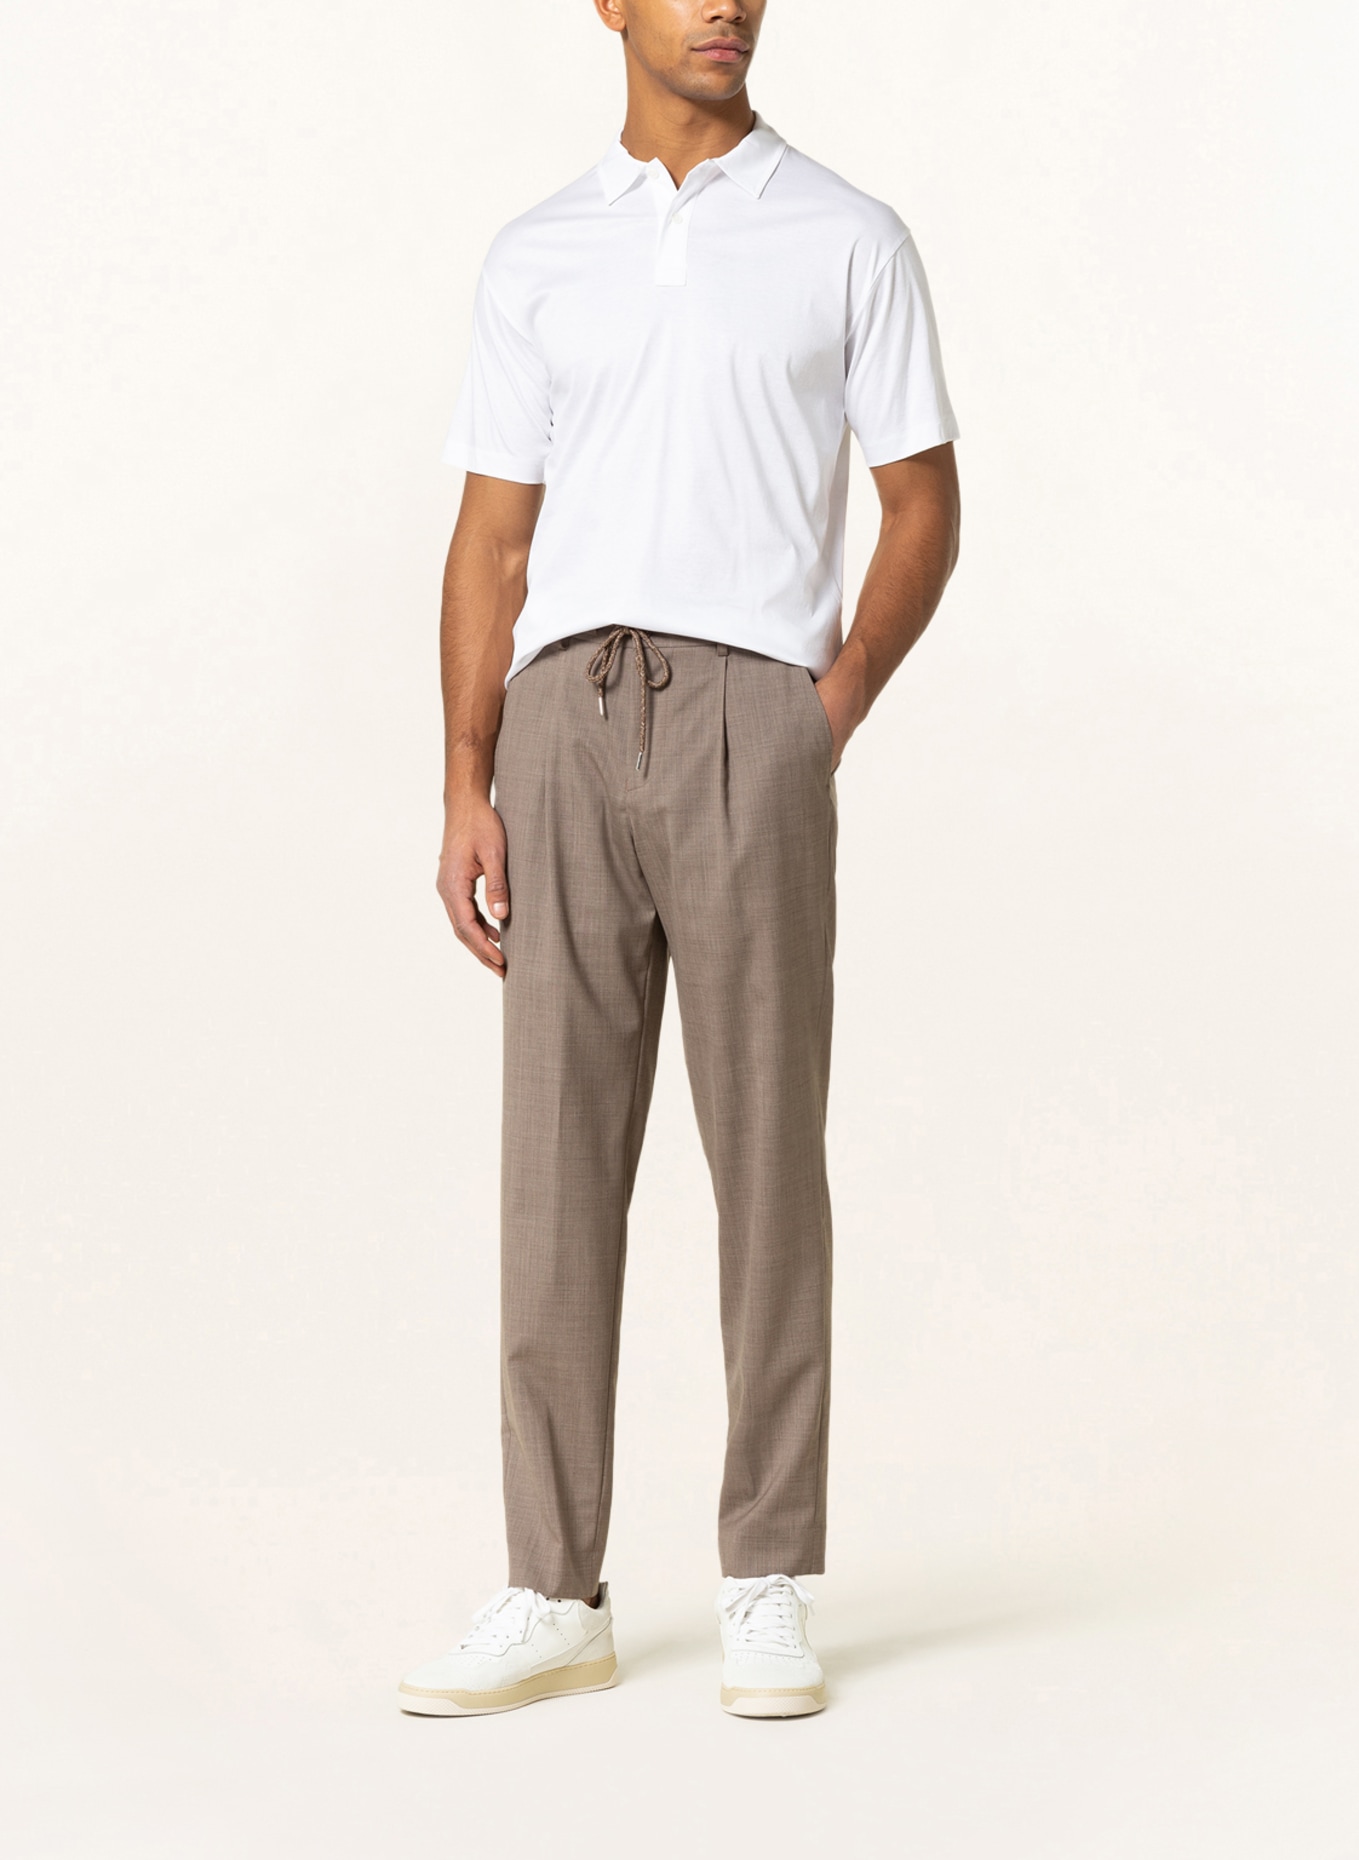 STROKESMAN'S Jersey polo shirt, Color: WHITE (Image 2)